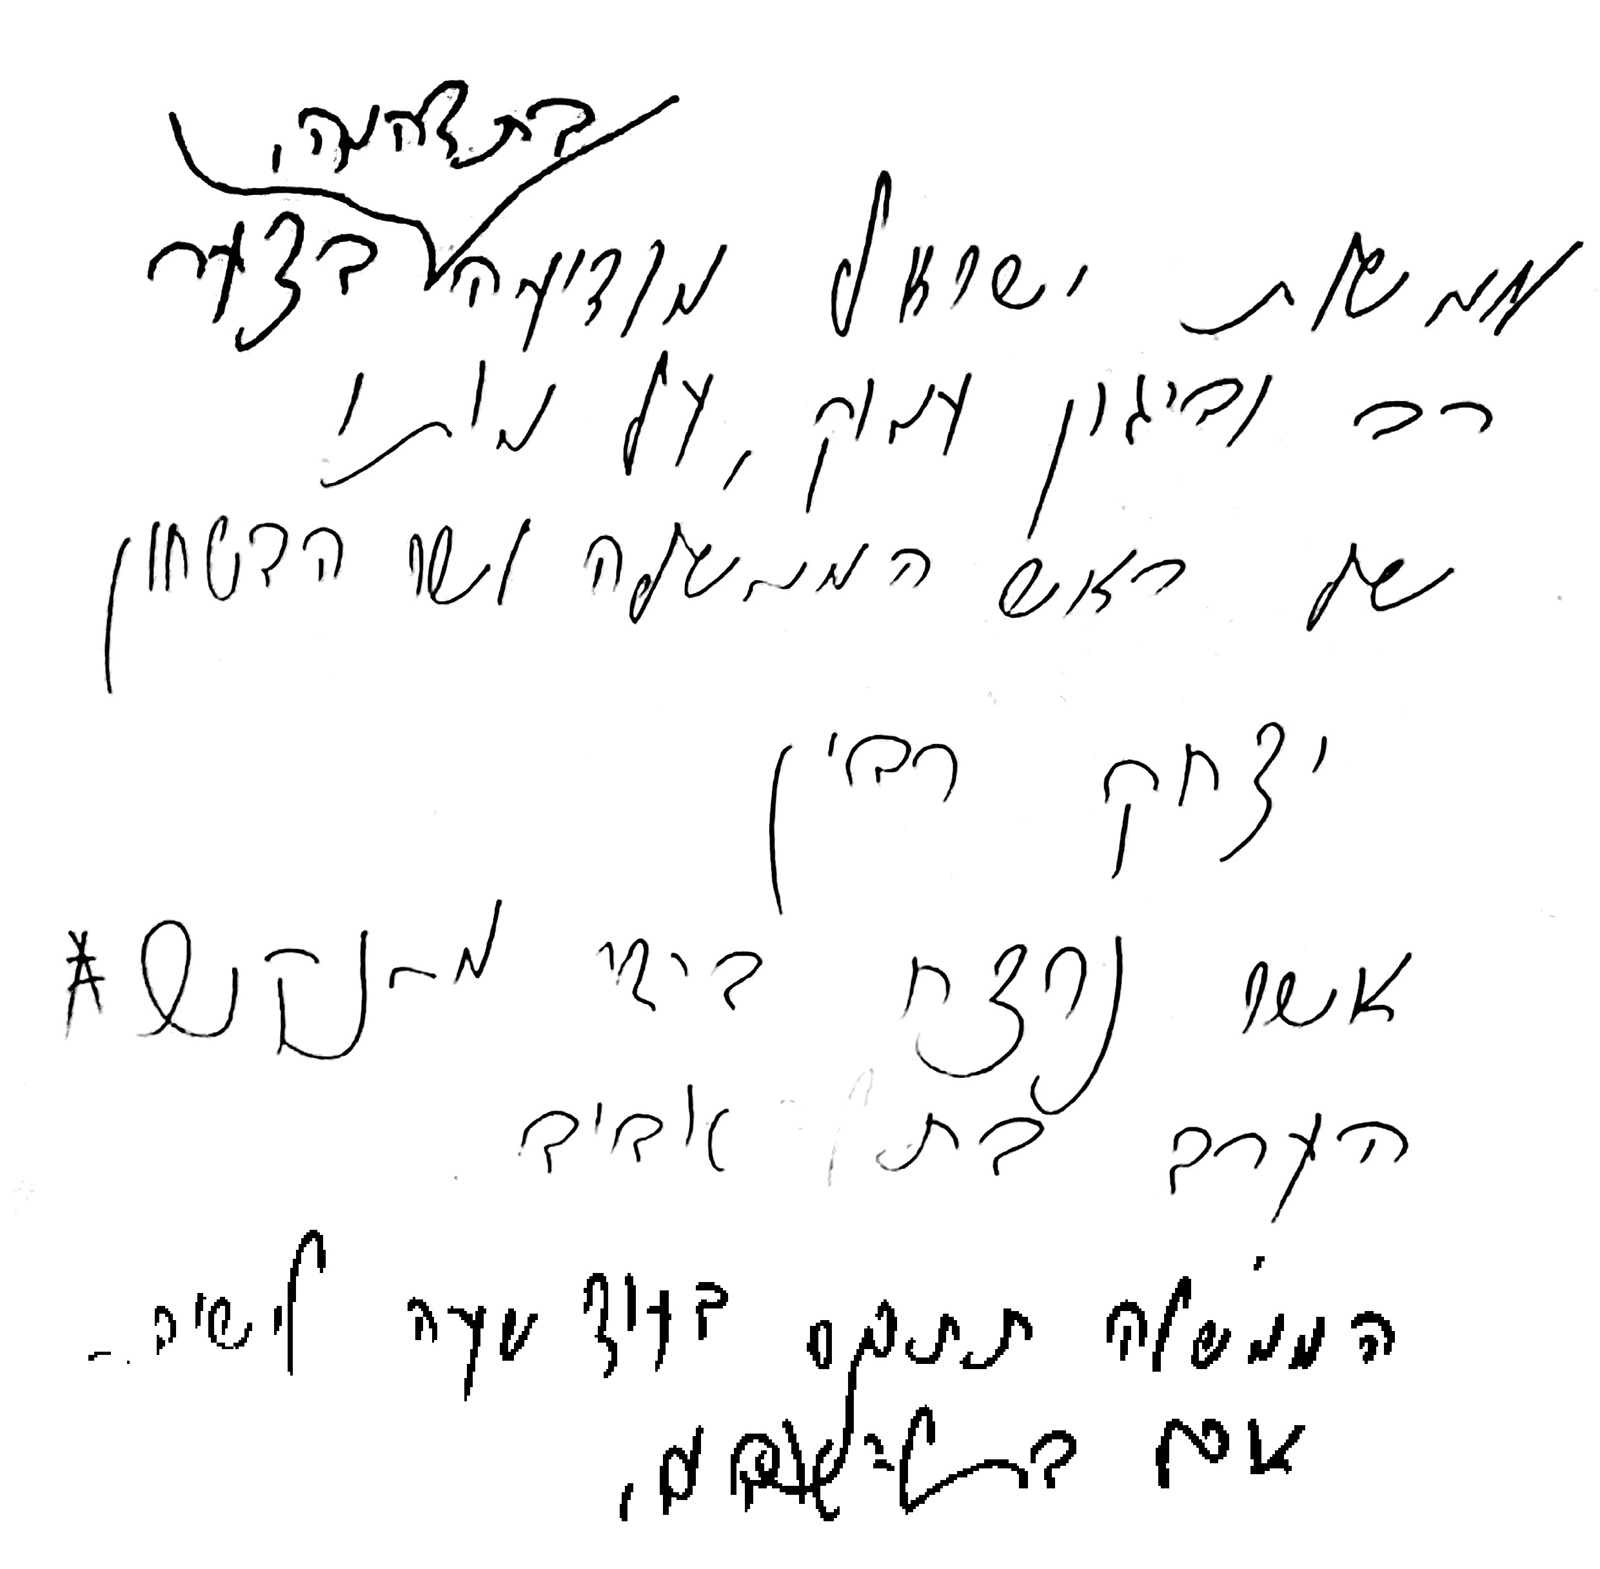 ההודעה בכתב ידו של של איתן הבר על רצח רבין. (צילום: ויקימדיה)